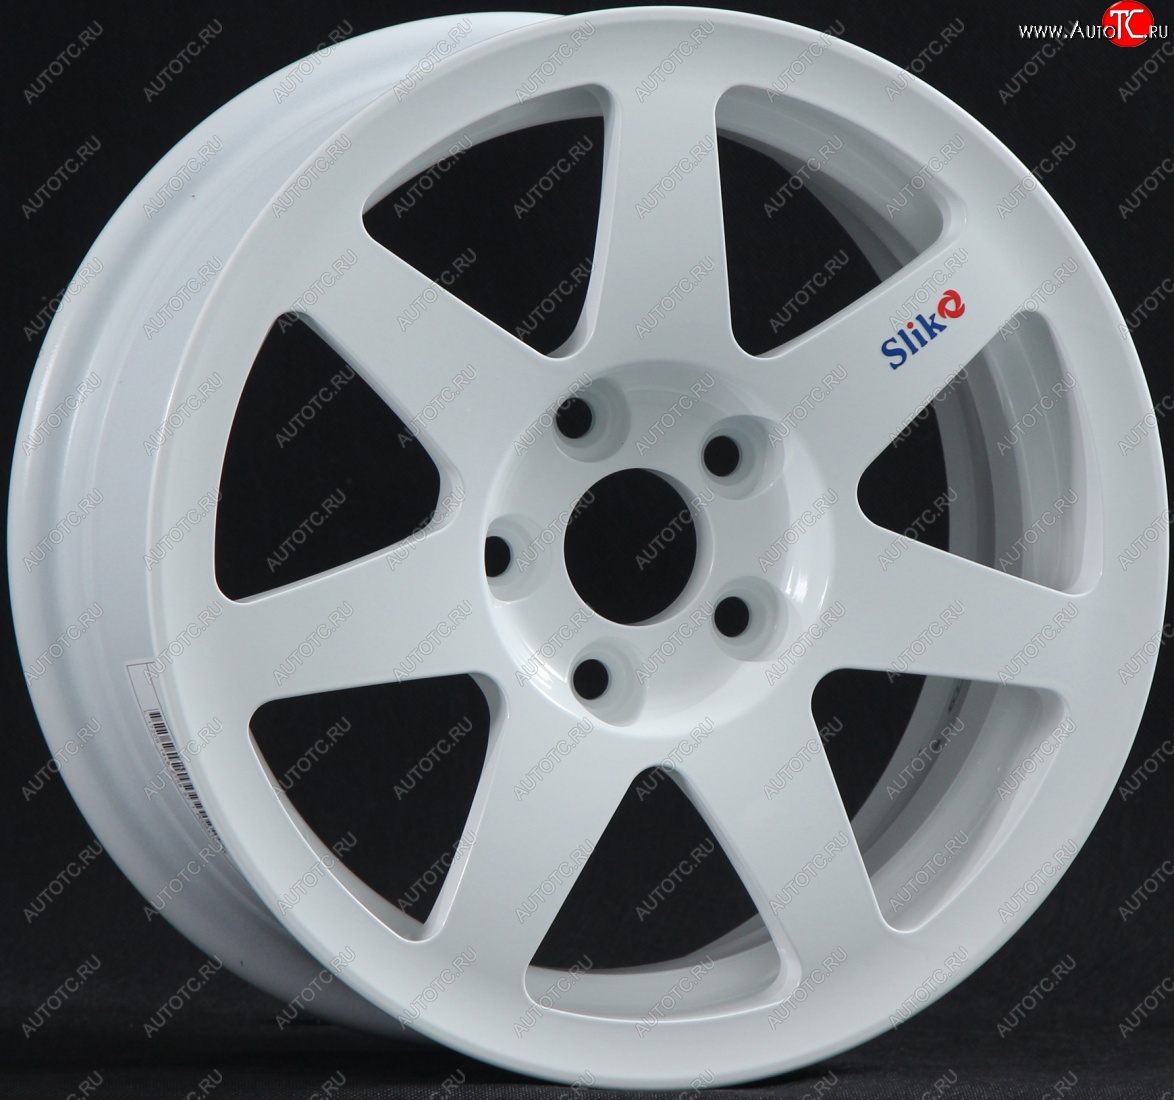 12 199 р. Кованый диск Slik Classik 6x14 (Белый) Nissan Latio N17 седан правый руль дорестайлинг (2012-2014) 4x100.0xDIA60.0xET40.0 (Цвет: Белый)